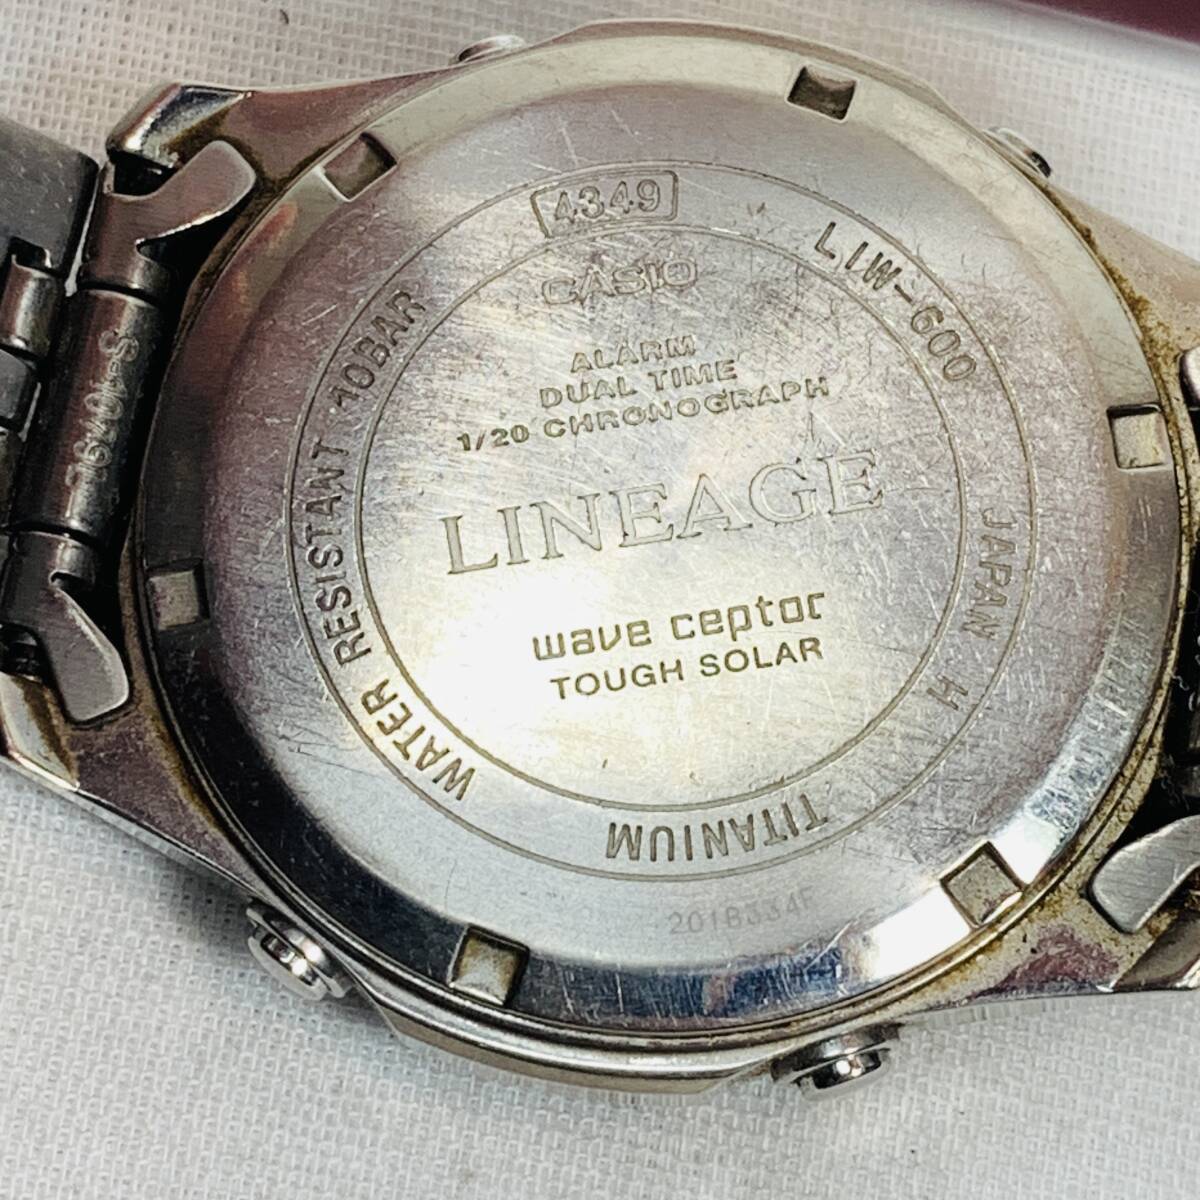 CASIO カシオ 腕時計 LINEAGE リンエージ LIW-600 ソーラー電波時計 チタン メンズ USED品 1円スタート _画像6